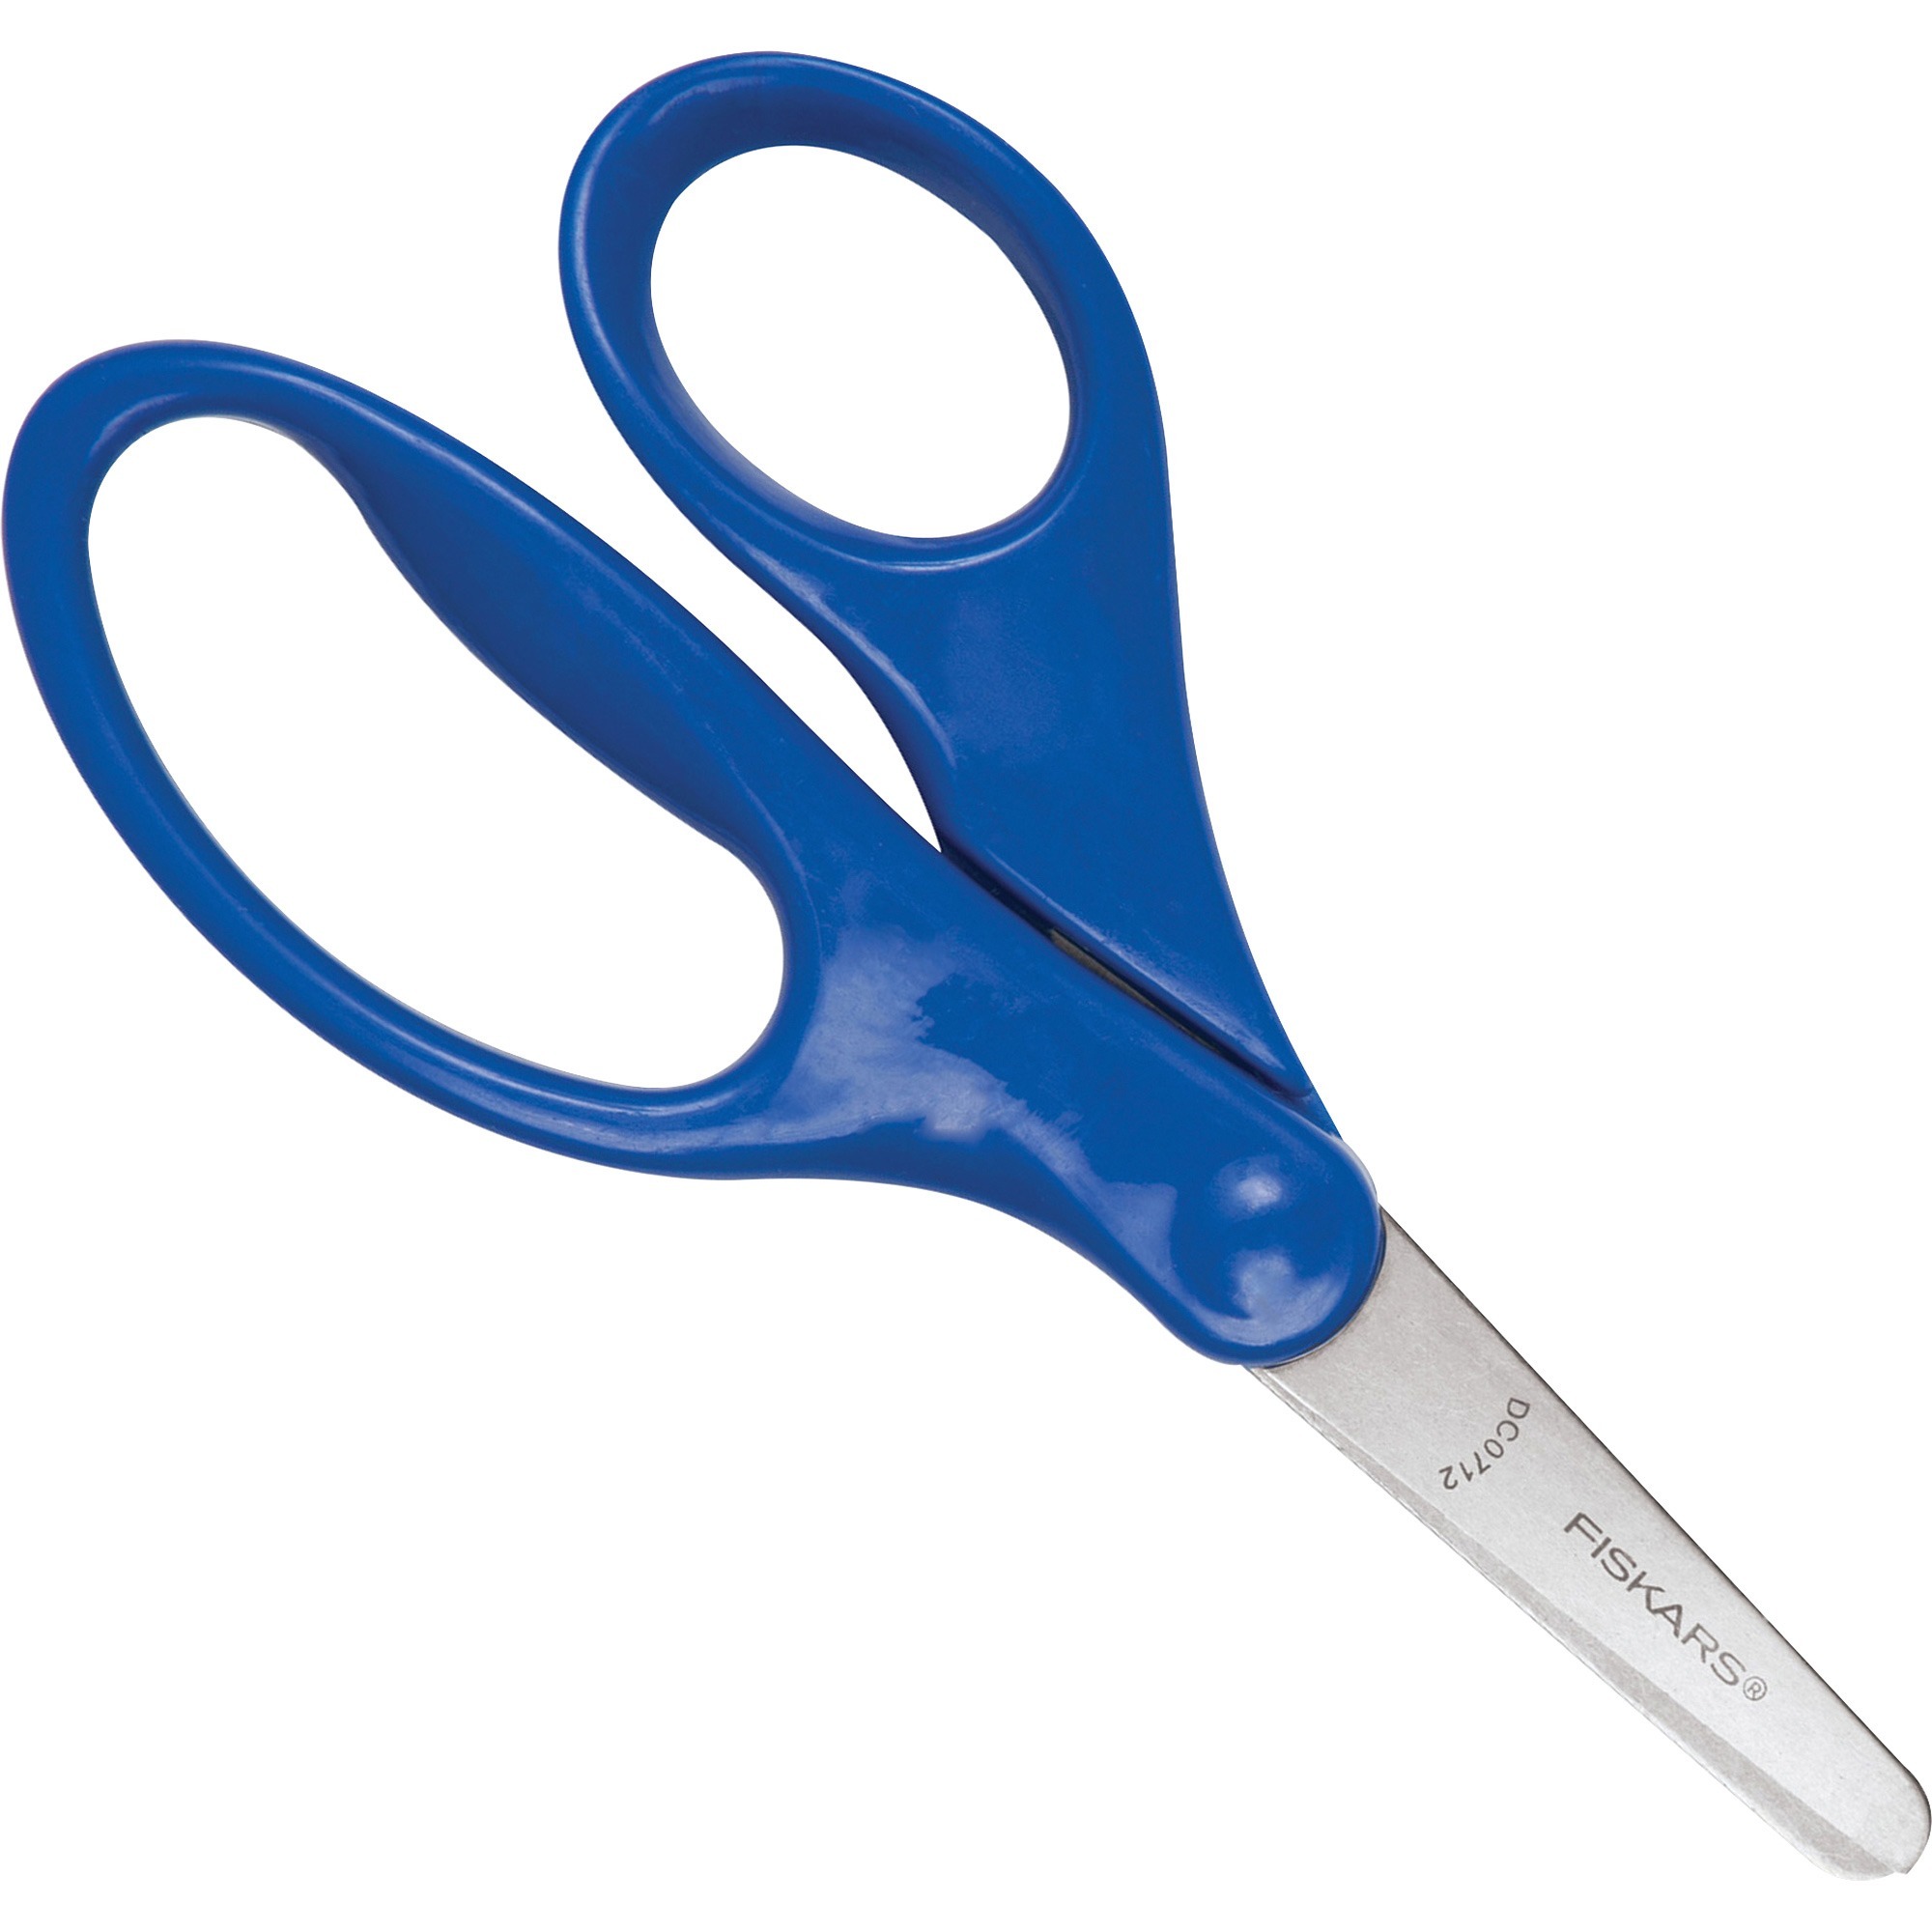 5 Blunt Fiskars Scissors - Ready-Set-Start